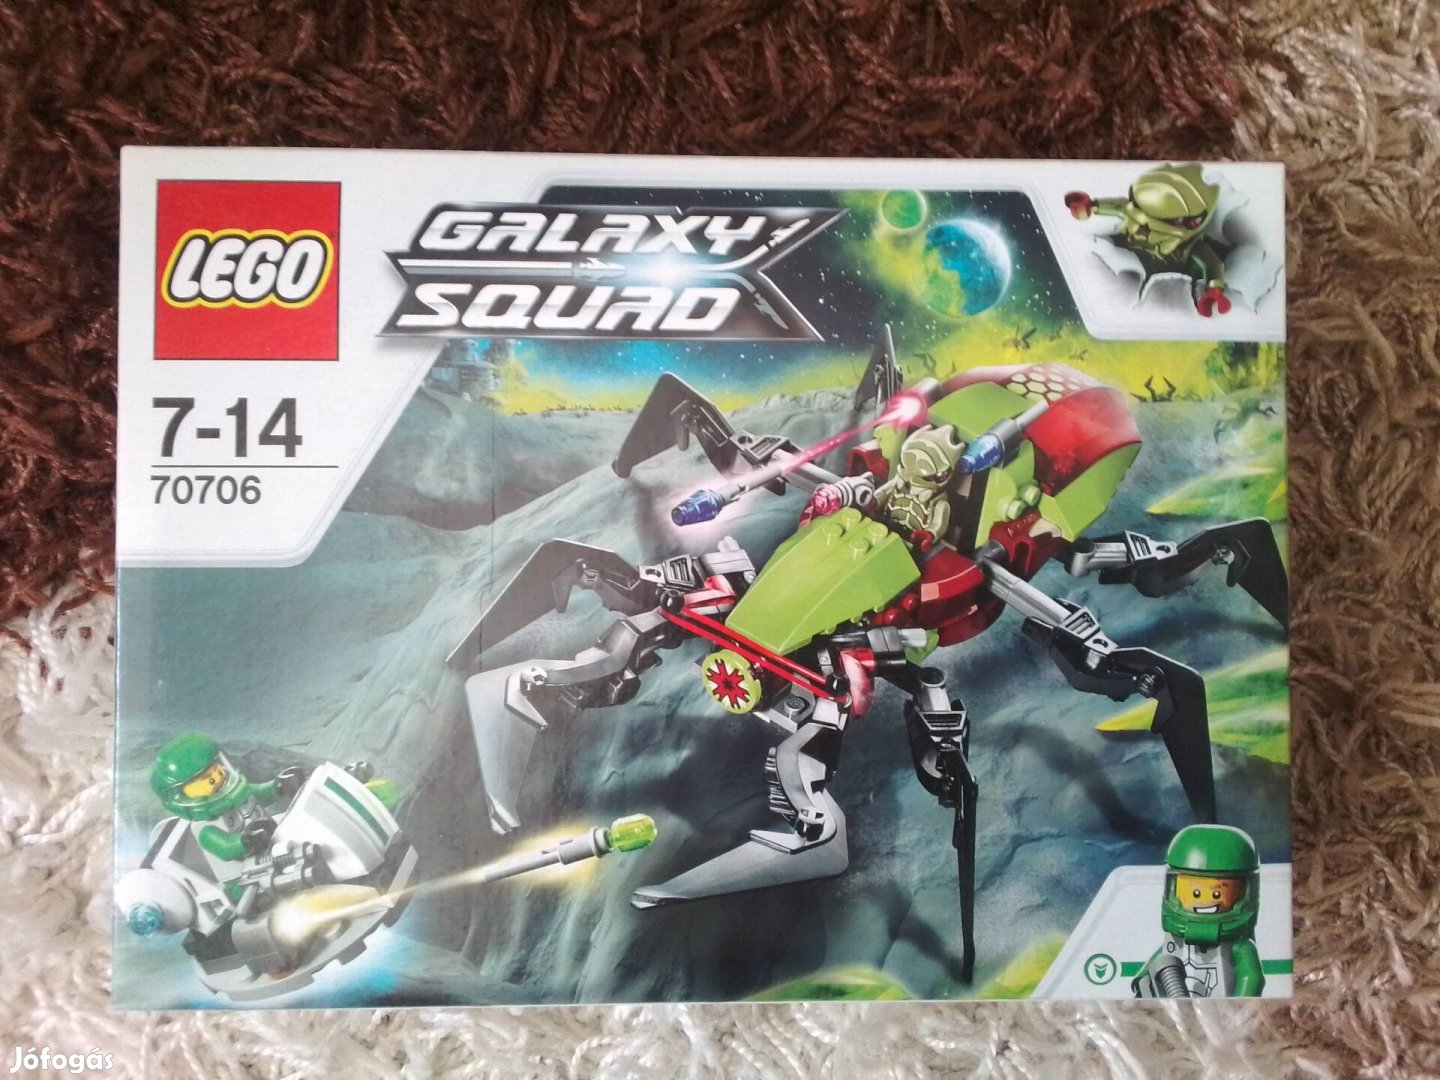 Lego 70706 Galaxy Squad